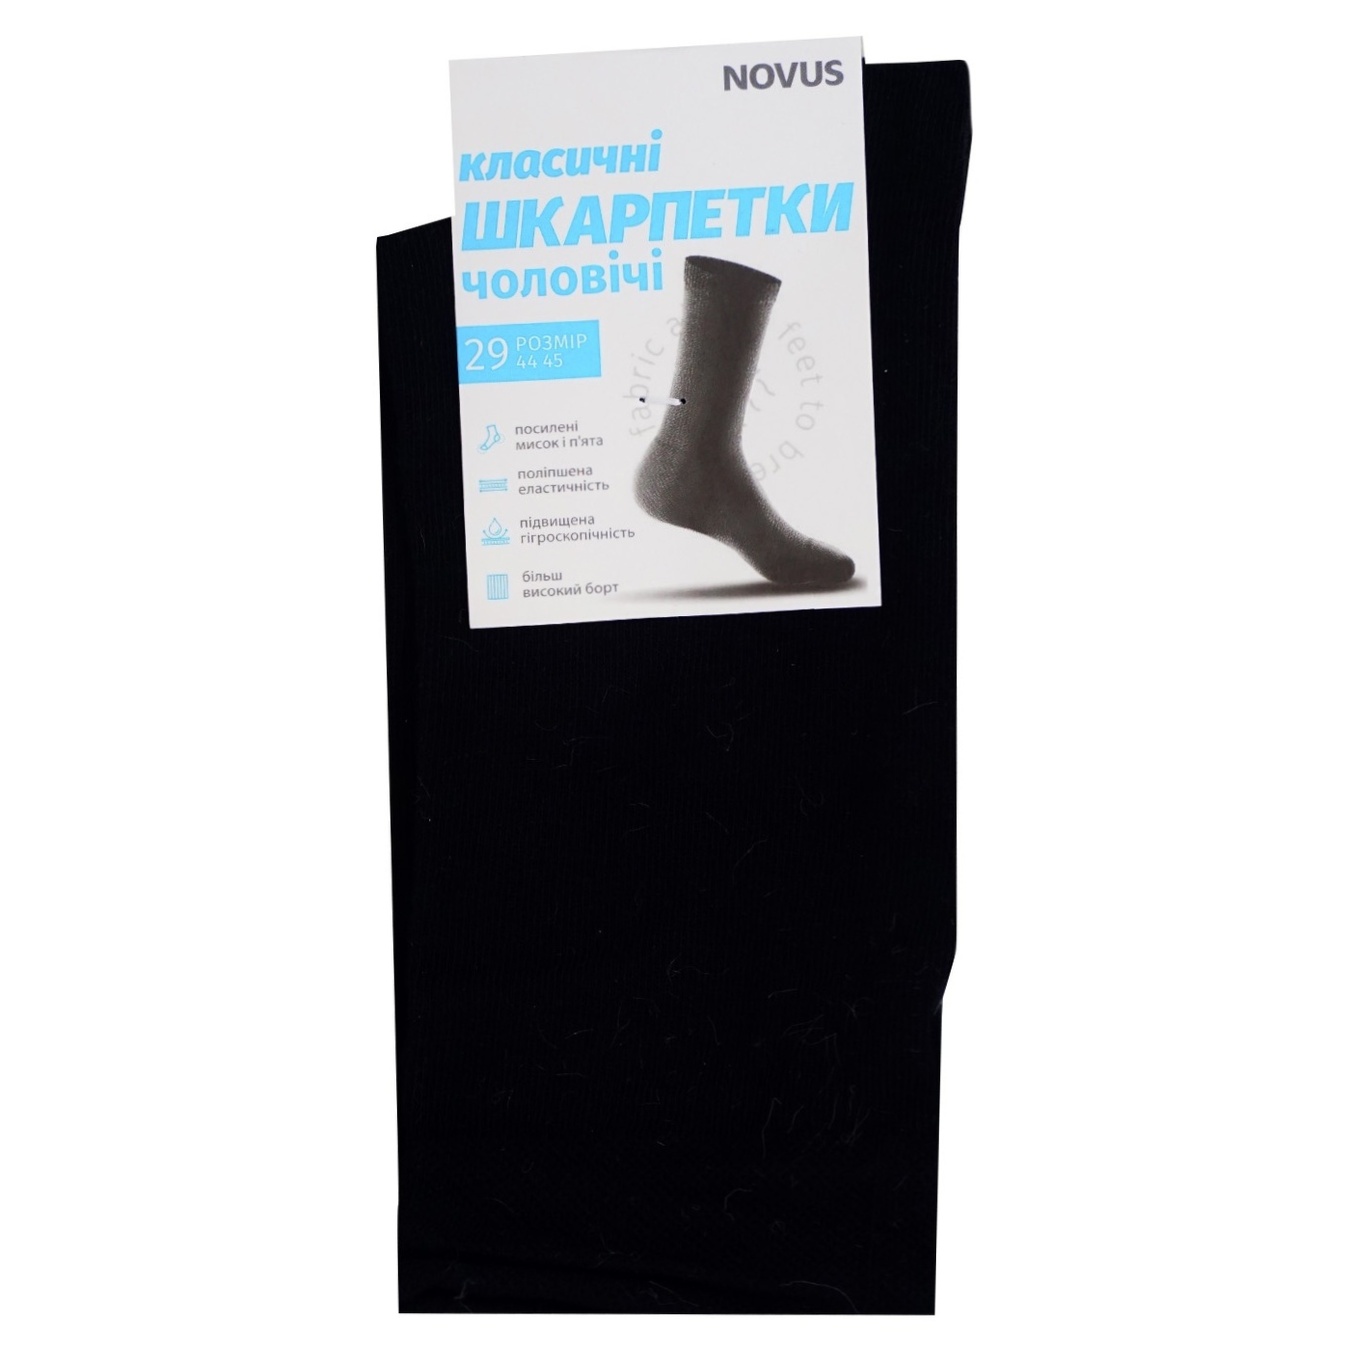 Men's socks NOVUS demi-season classic black size 29